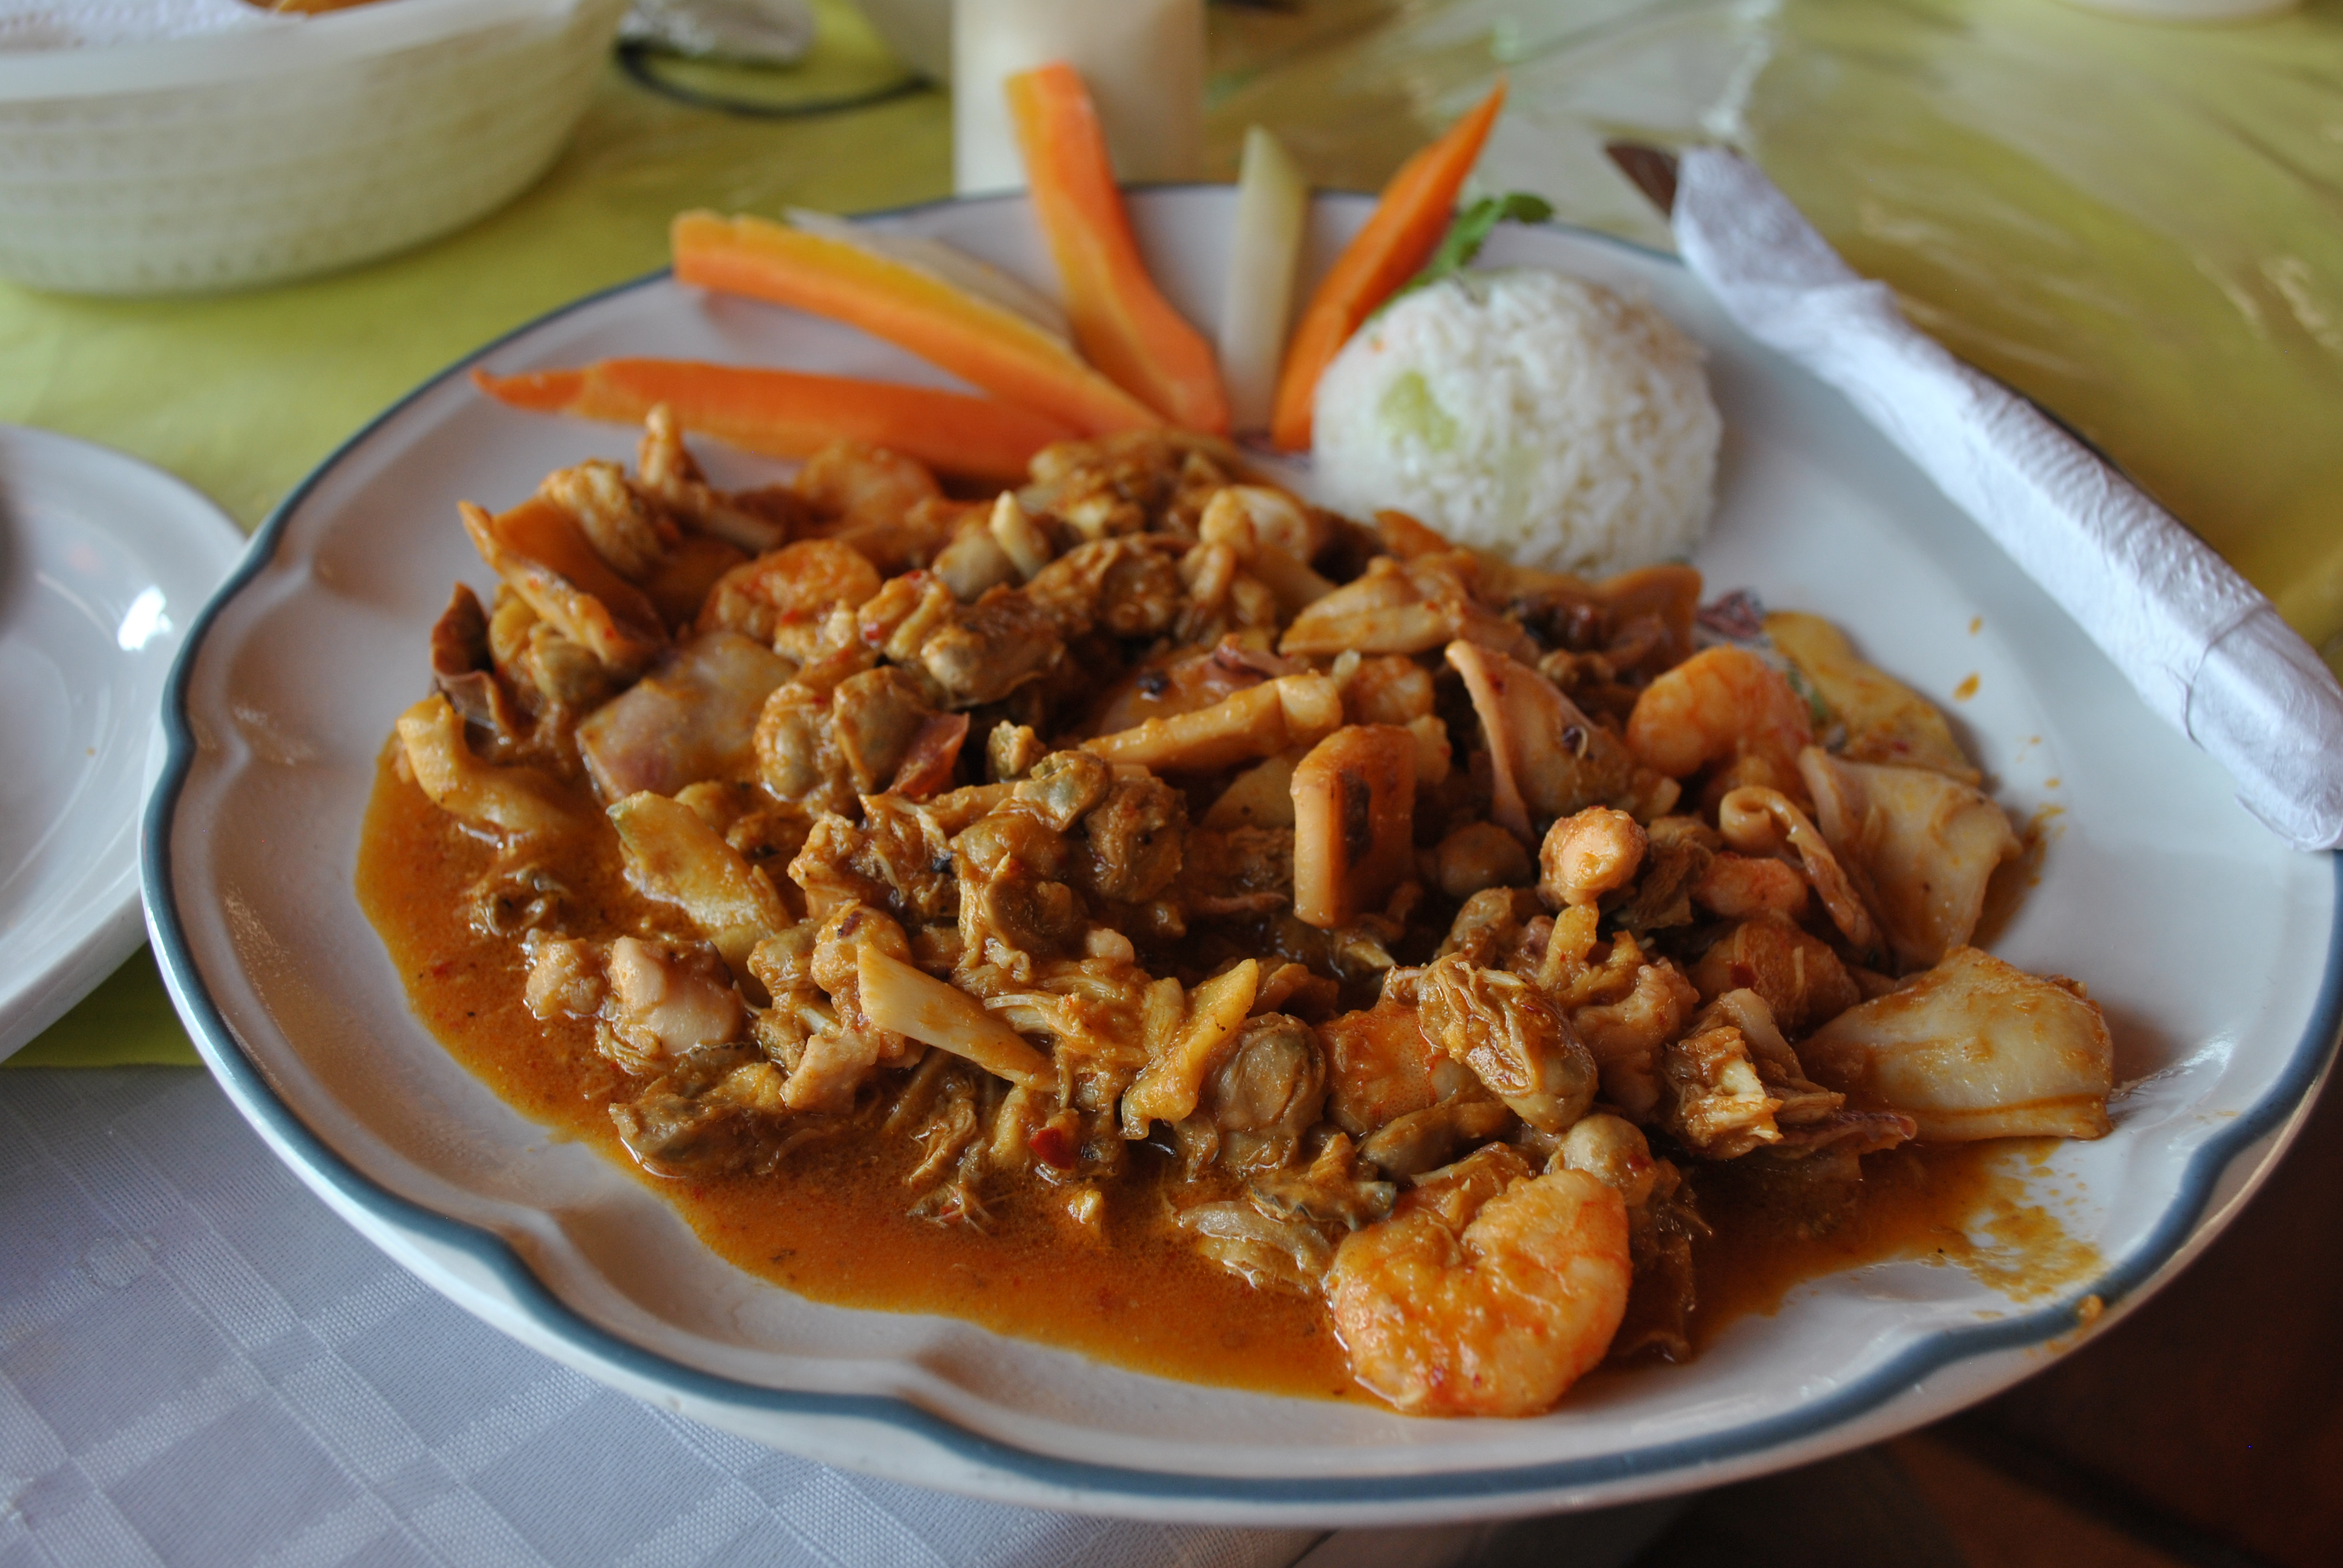 Gastronomía de Tabasco - Wikipedia, la enciclopedia libre